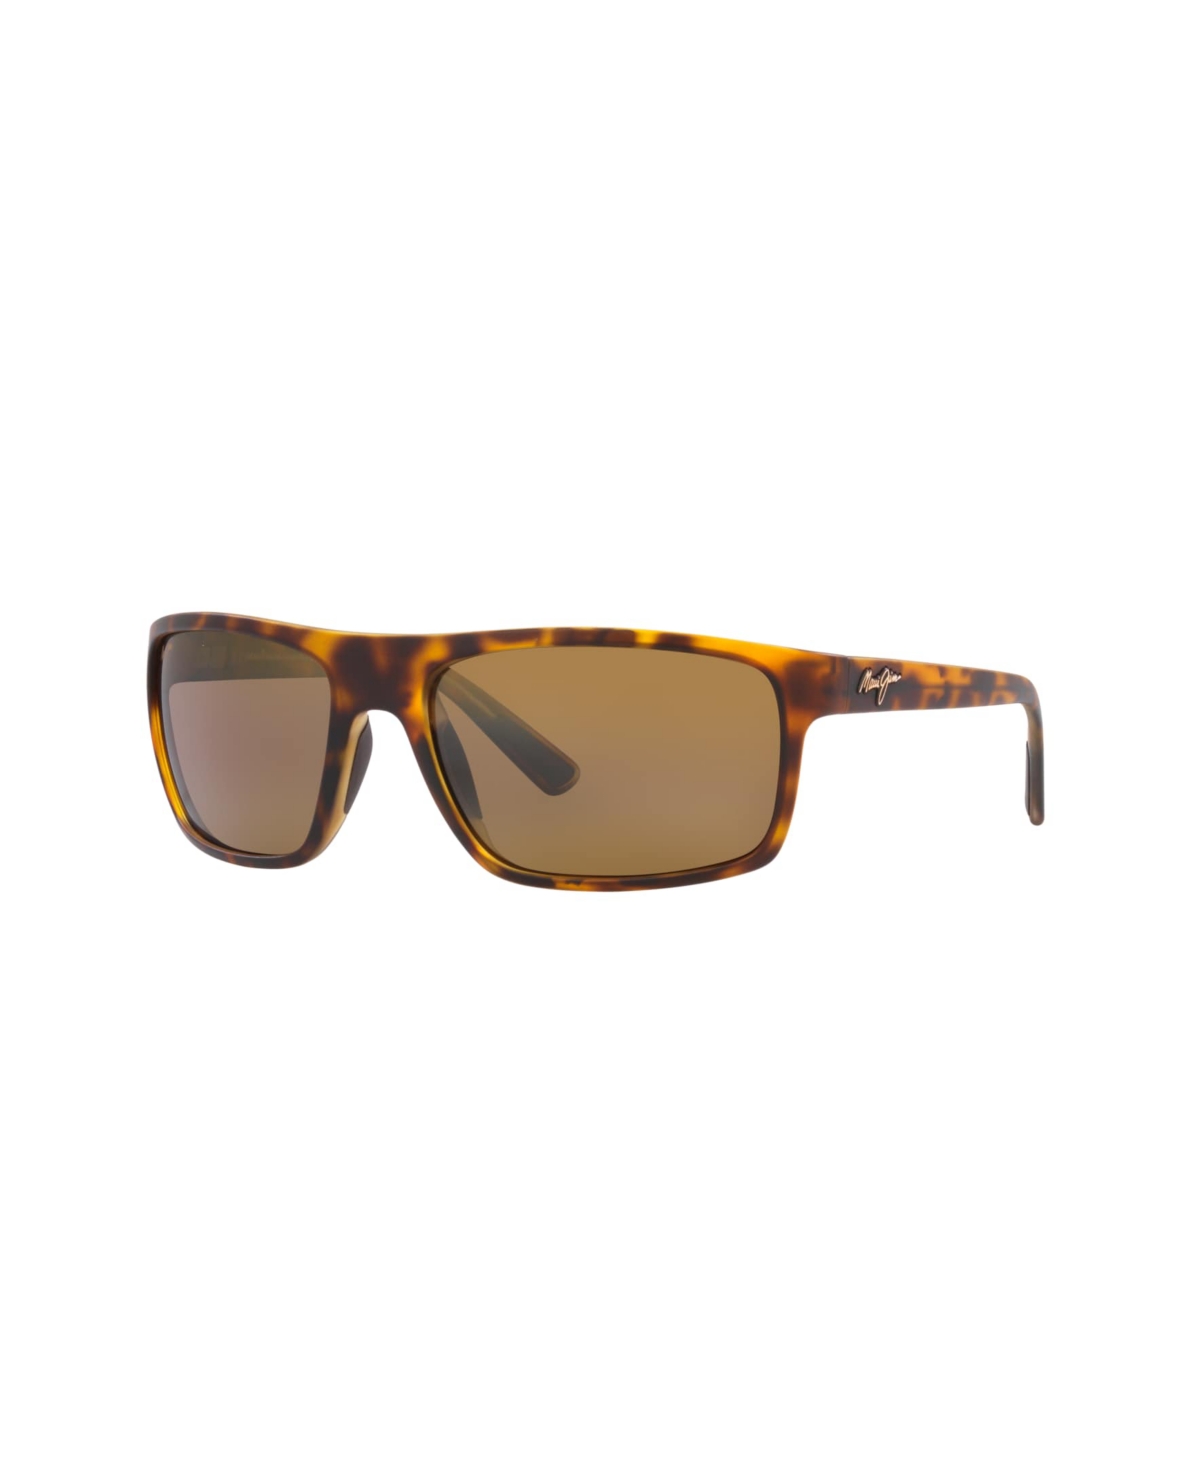 Unisex Polarized Sunglasses, 746 Byron Bay - Tortoise